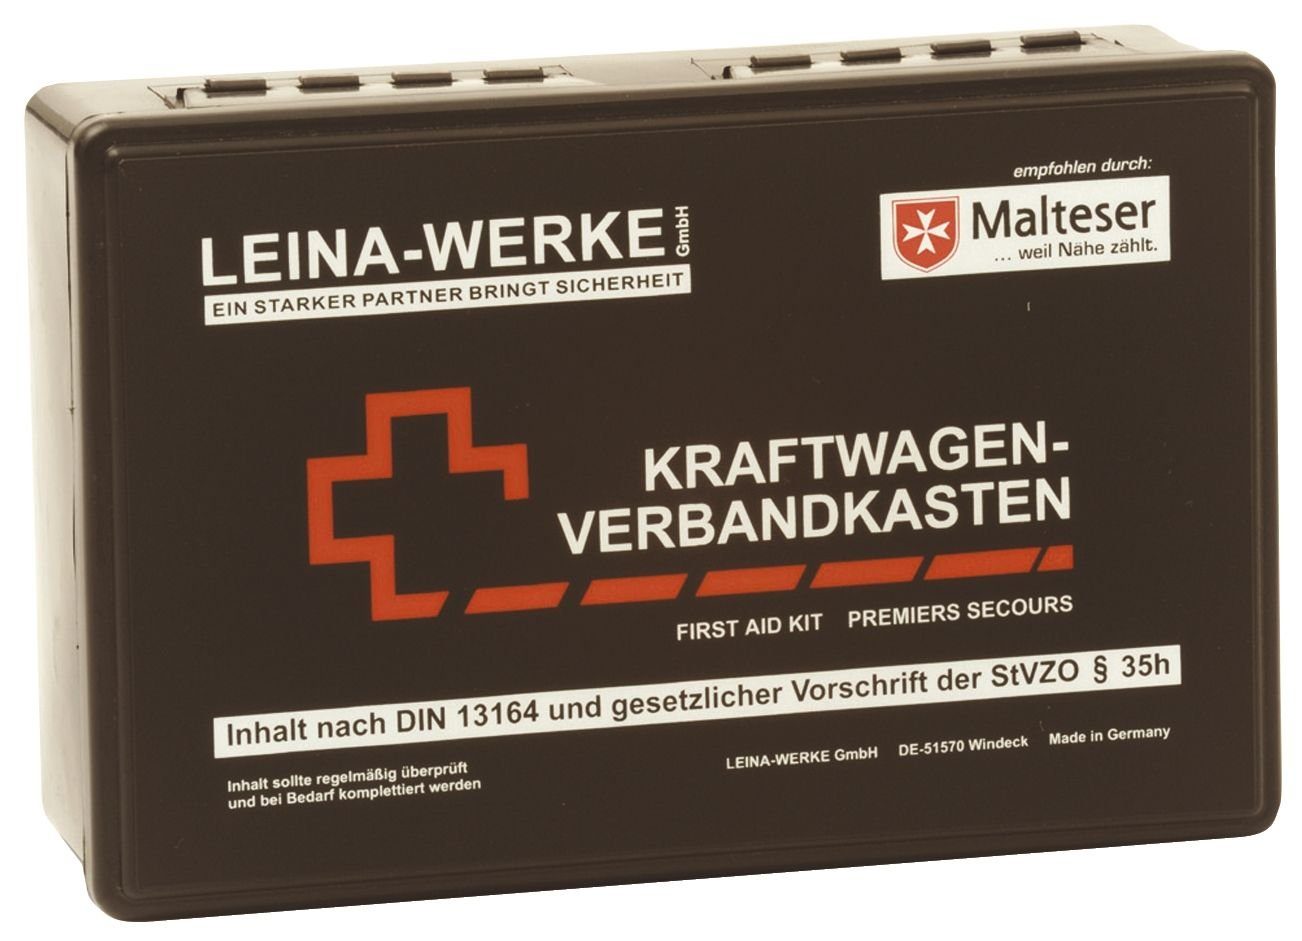 Leina-Werke KFZ Verbandkasten Standard - Inhalt nach DIN 13164 -  Erste-hilfe kaufen - sicherheitsfachgeschäft